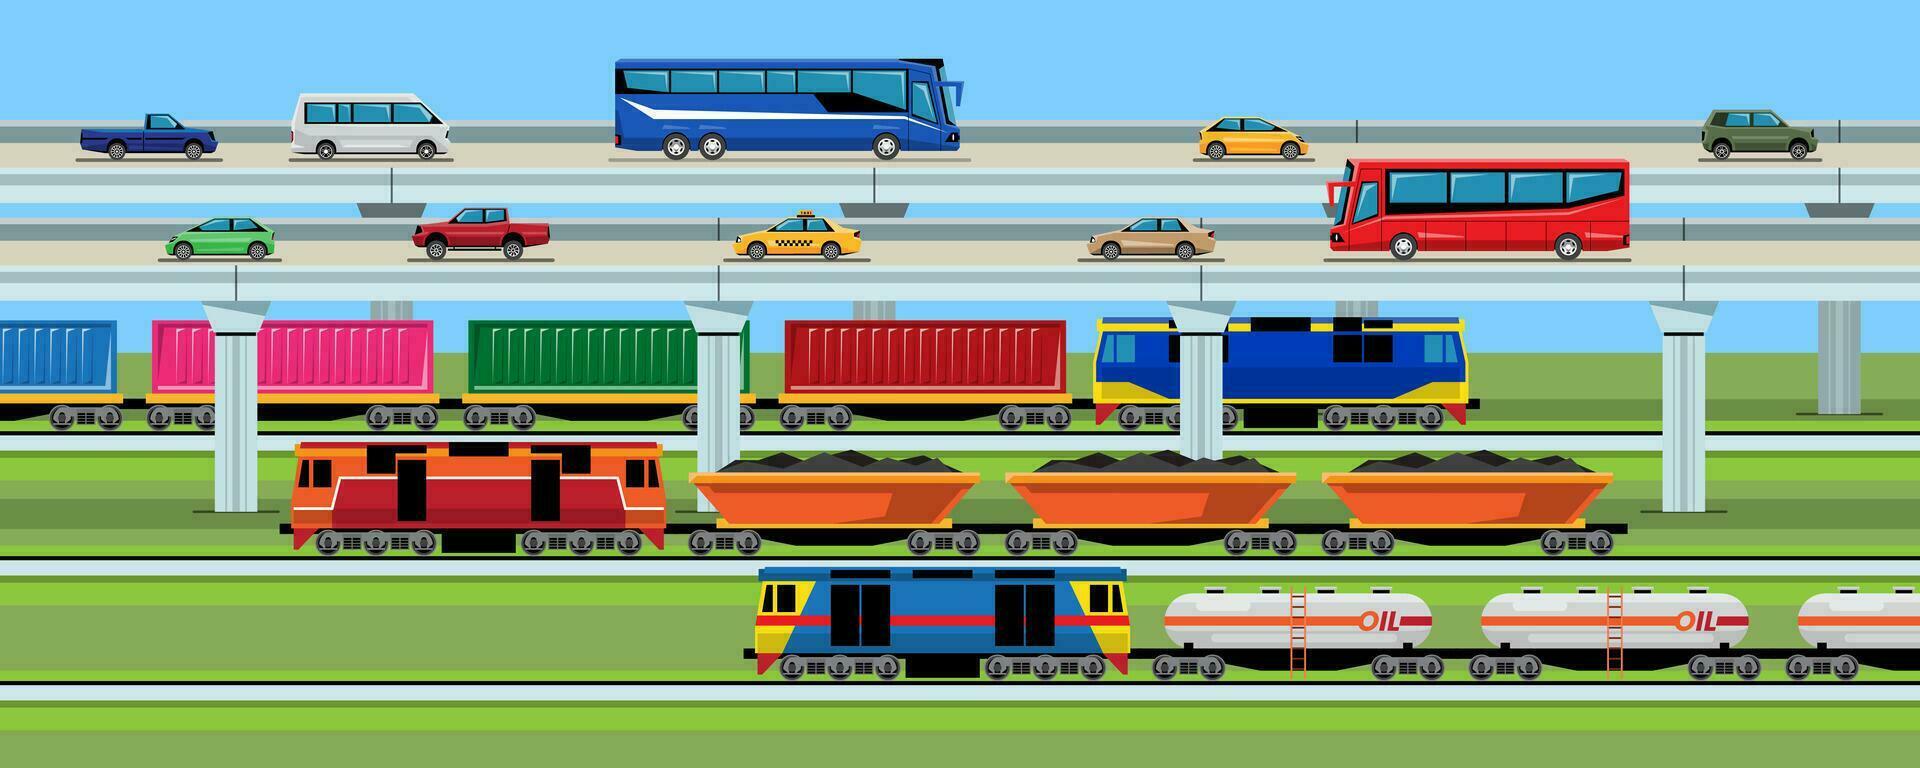 transporte vehículo en el ciudad, coche autobús camioneta camión y tren. vector